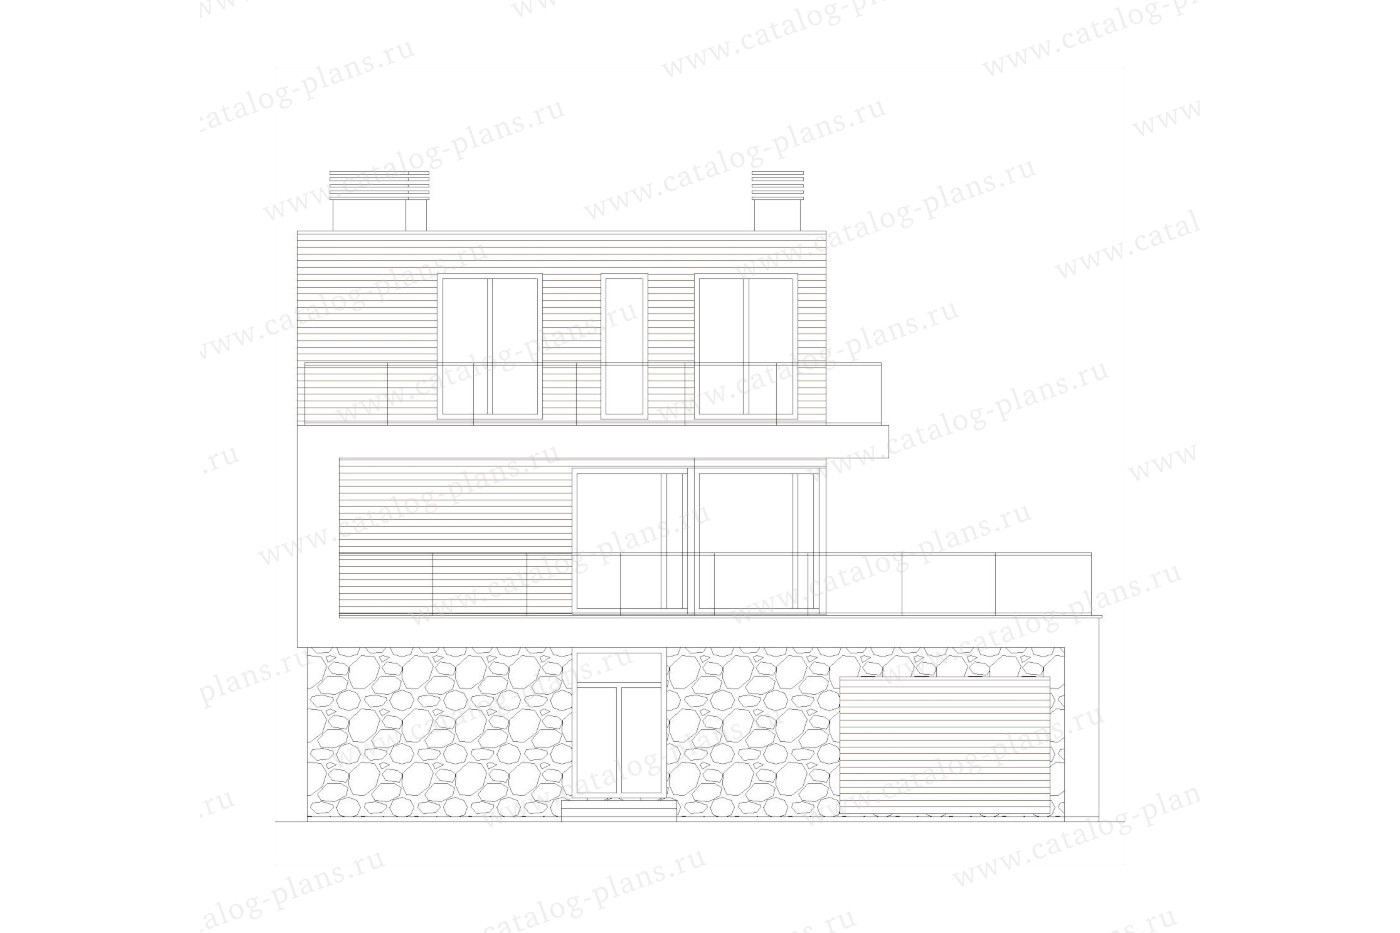 Проект 62-71EAC, жилой дом, материал - монолитный ж/б каркас с заполнением газобетонными блоками 400, количество этажей - 3, архитектурный стиль - хай-тек, фундамент - монолитная ж/б плита